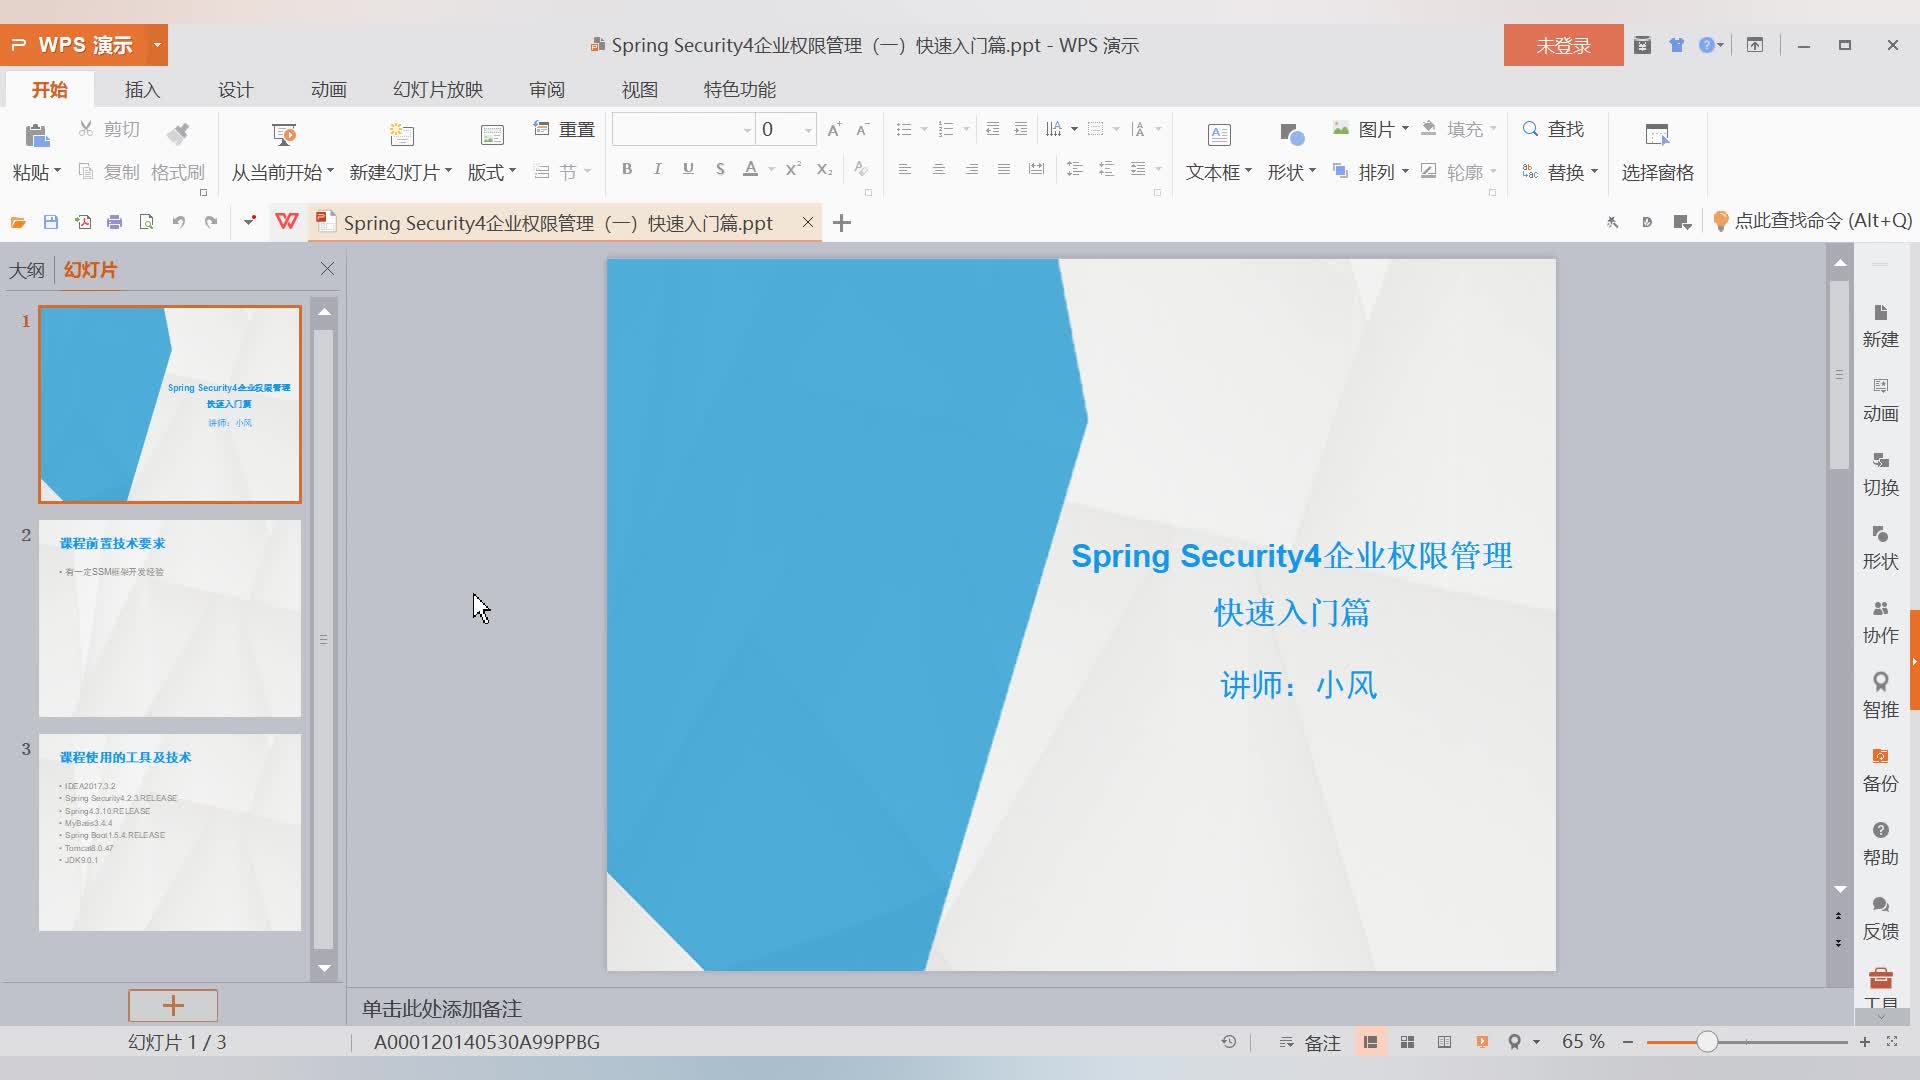 Java全栈工程师-Spring Security